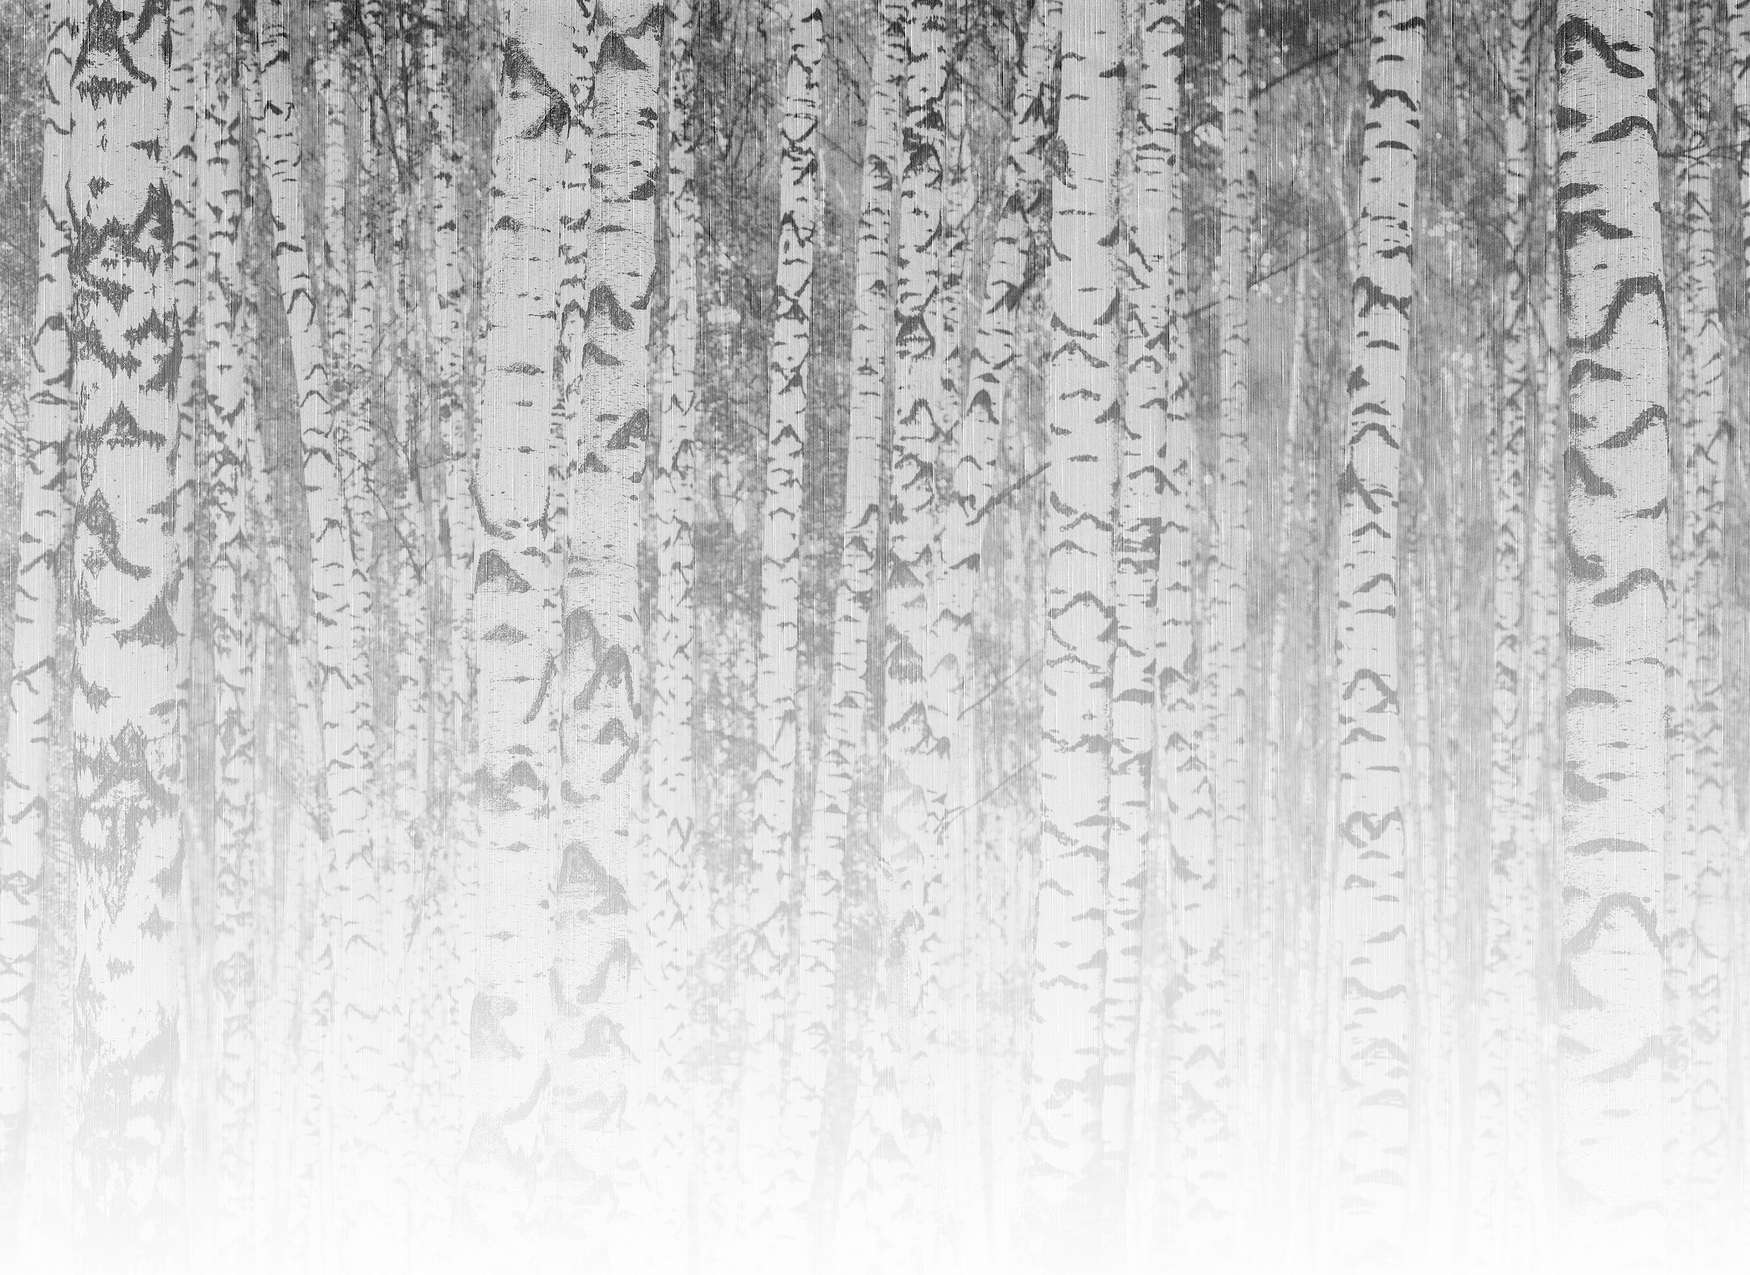             Papier peint bouleau clair troncs d'arbres dans la forêt brumeuse - noir et blanc
        